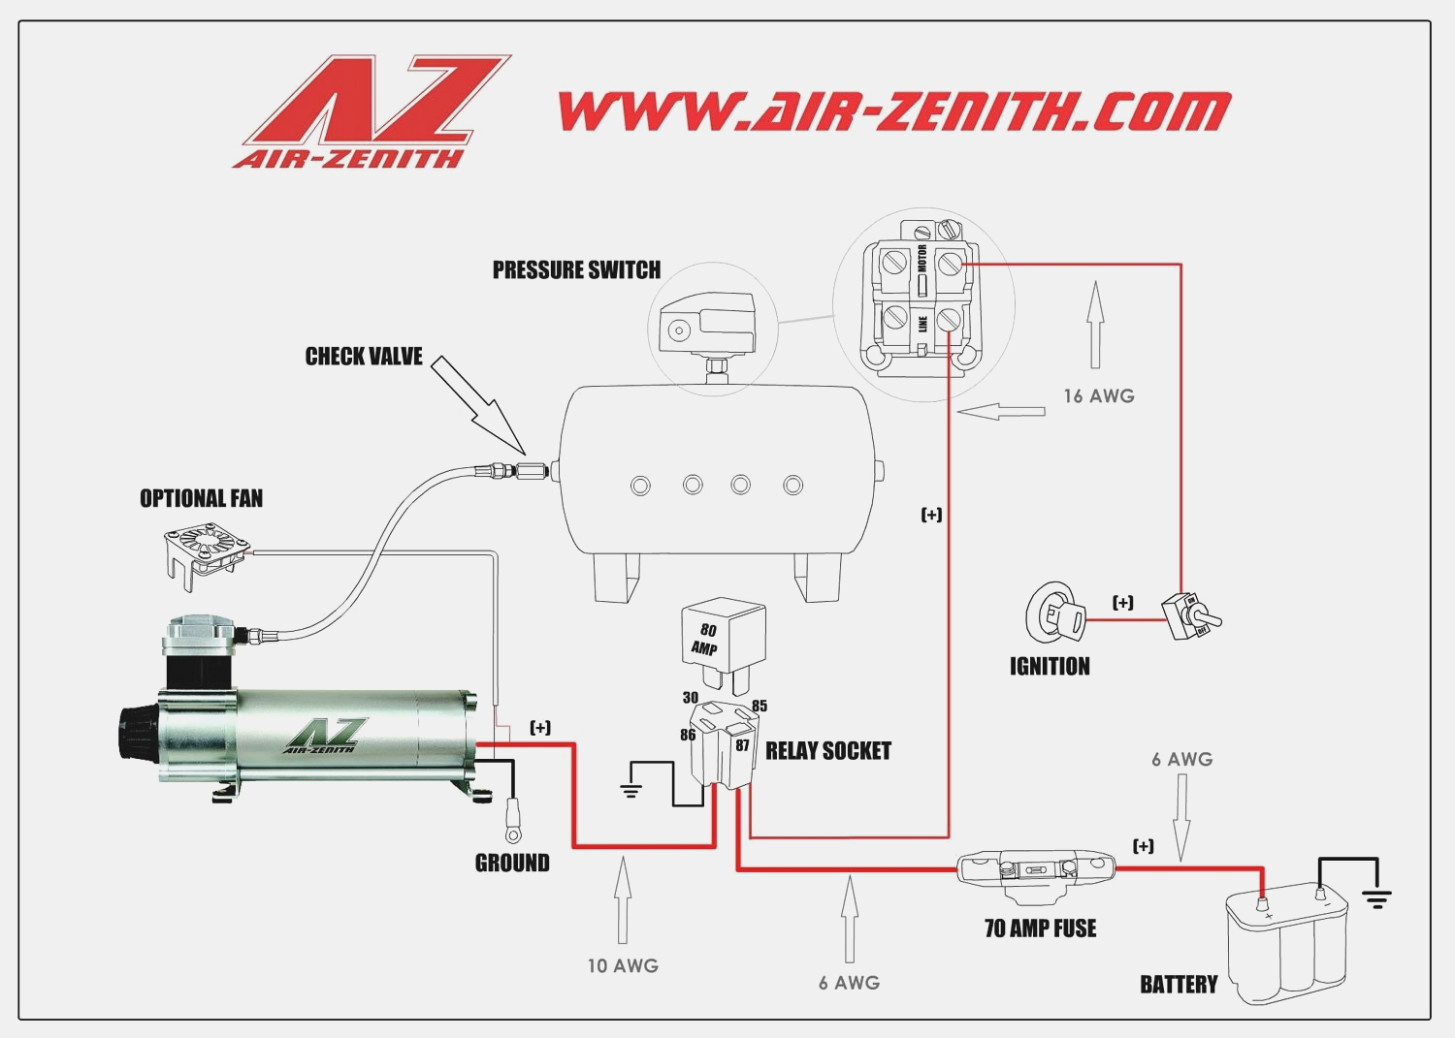 Air Compressor Wiring Diagram Schematic - Wiring Diagrams Hubs - Wiring Diagram For Air Compressor Motor